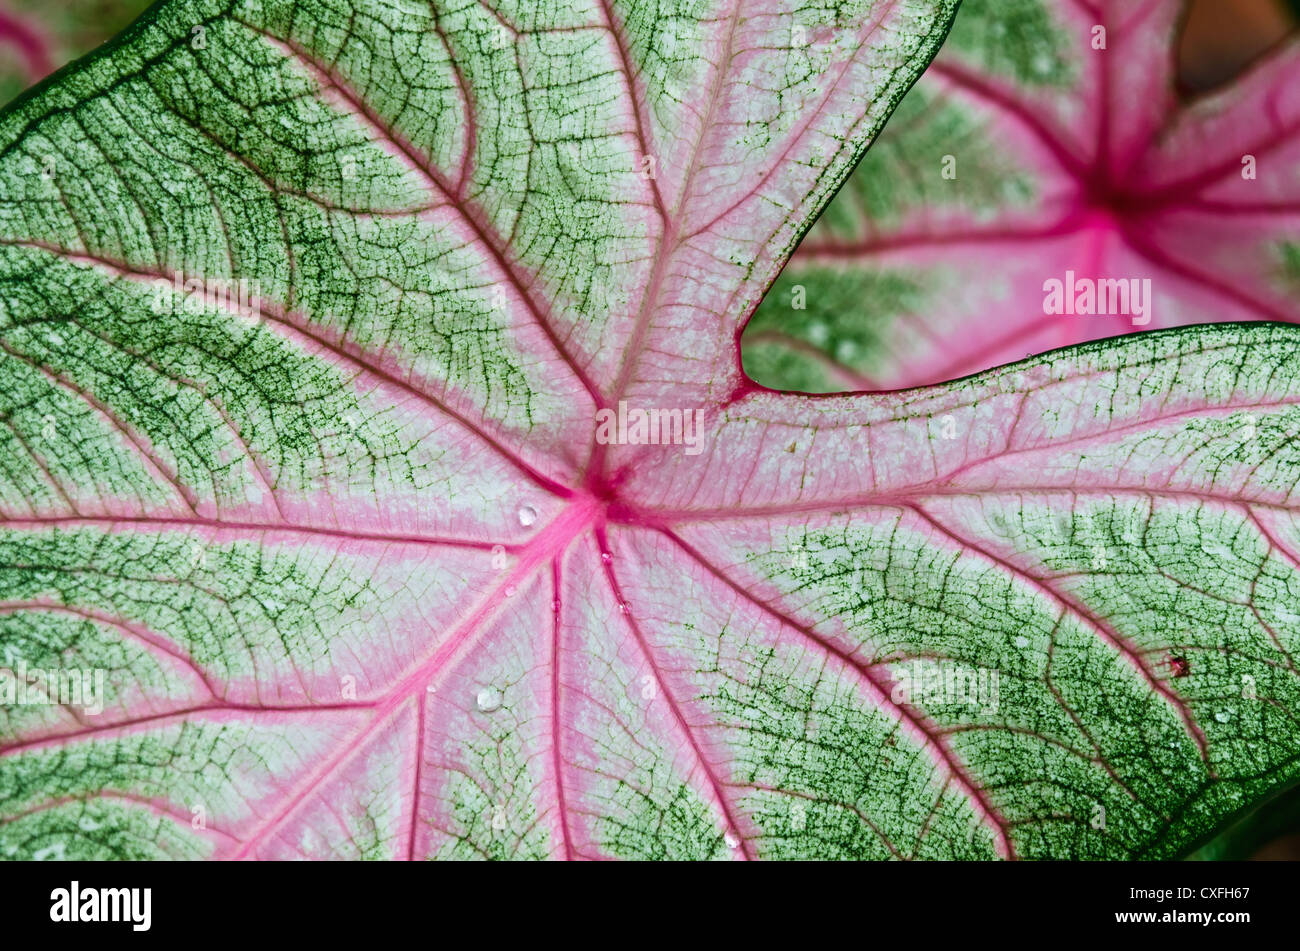 Caladium leaf detail Stock Photo